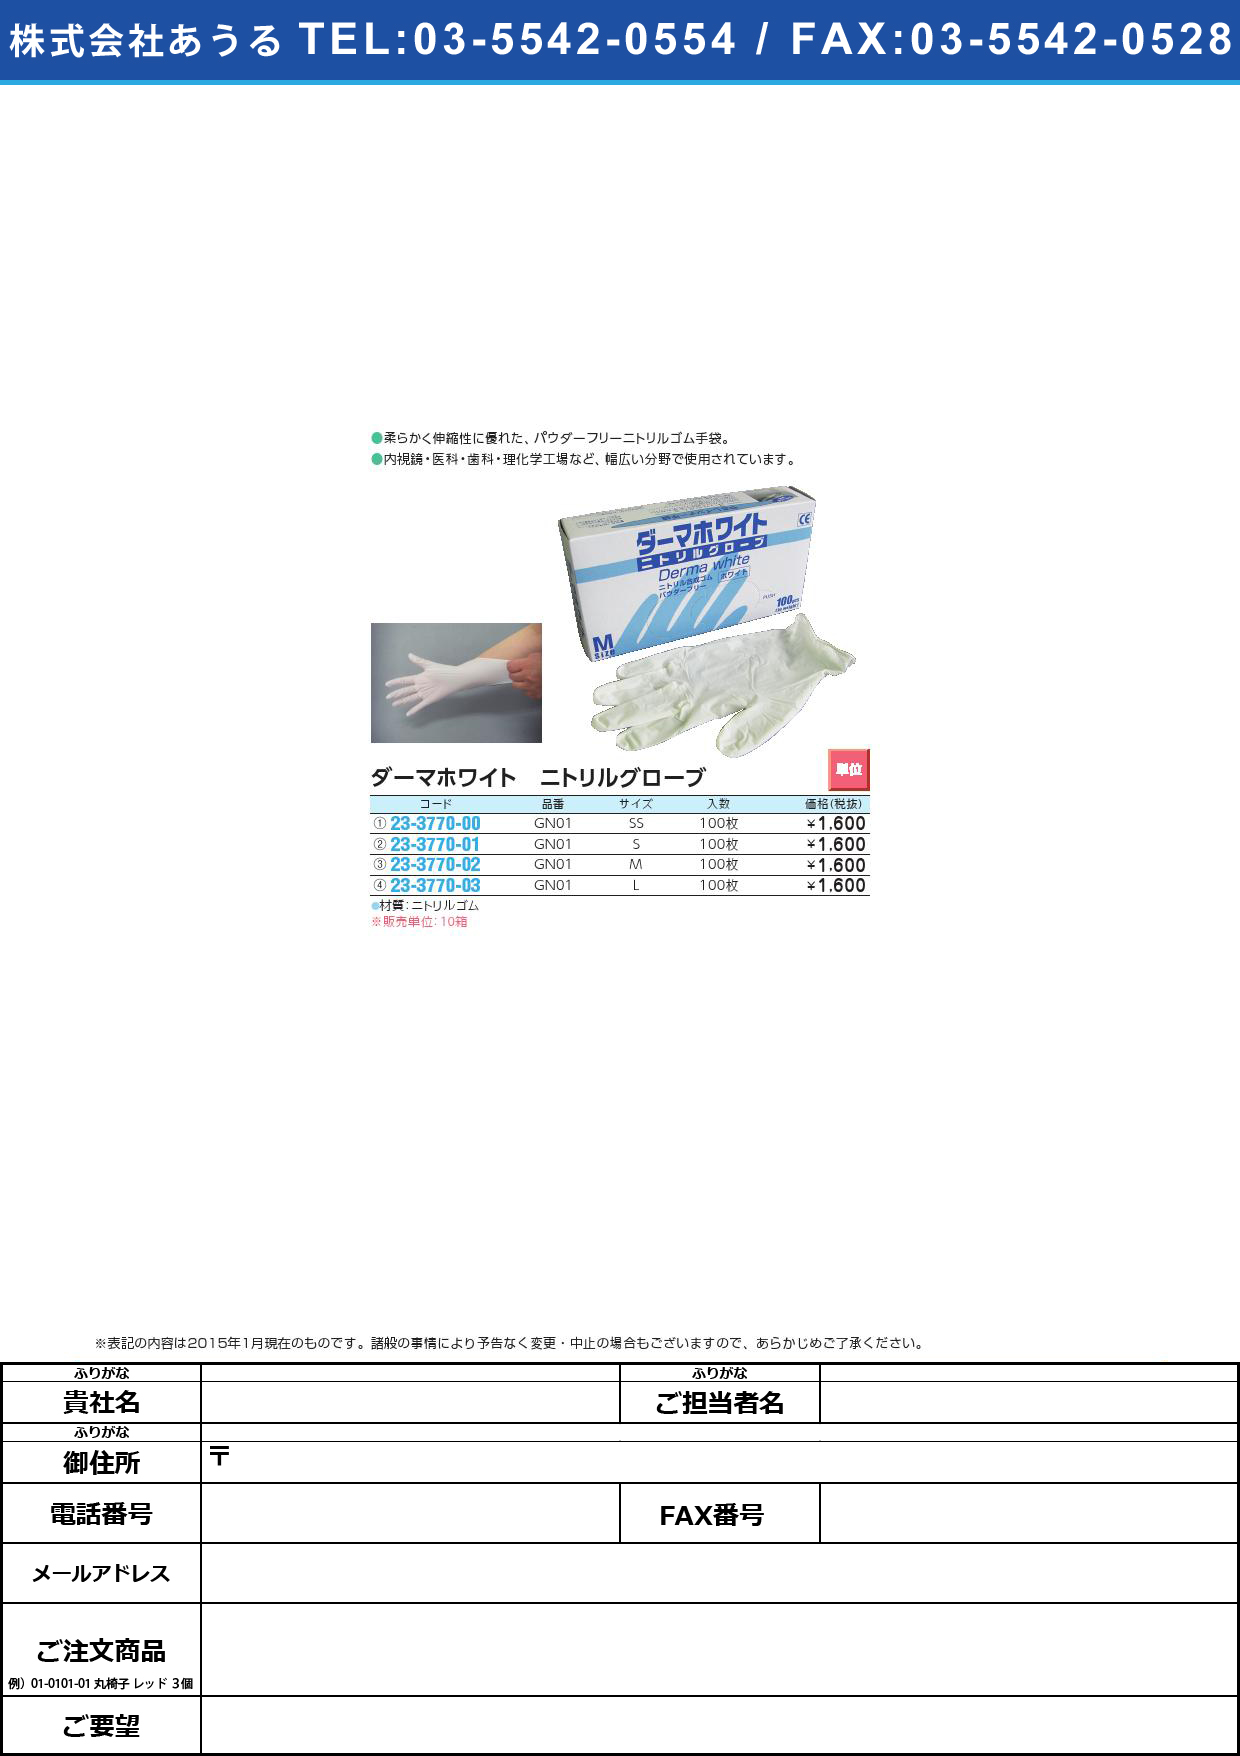 ダーマホワイト ニトリル手袋ＰＦ ﾀﾞｰﾏﾎﾜｲﾄﾆﾄﾘﾙﾃﾌﾞｸﾛPF GN01(SS)100ﾏｲ【10箱単位】(23-3770-00)